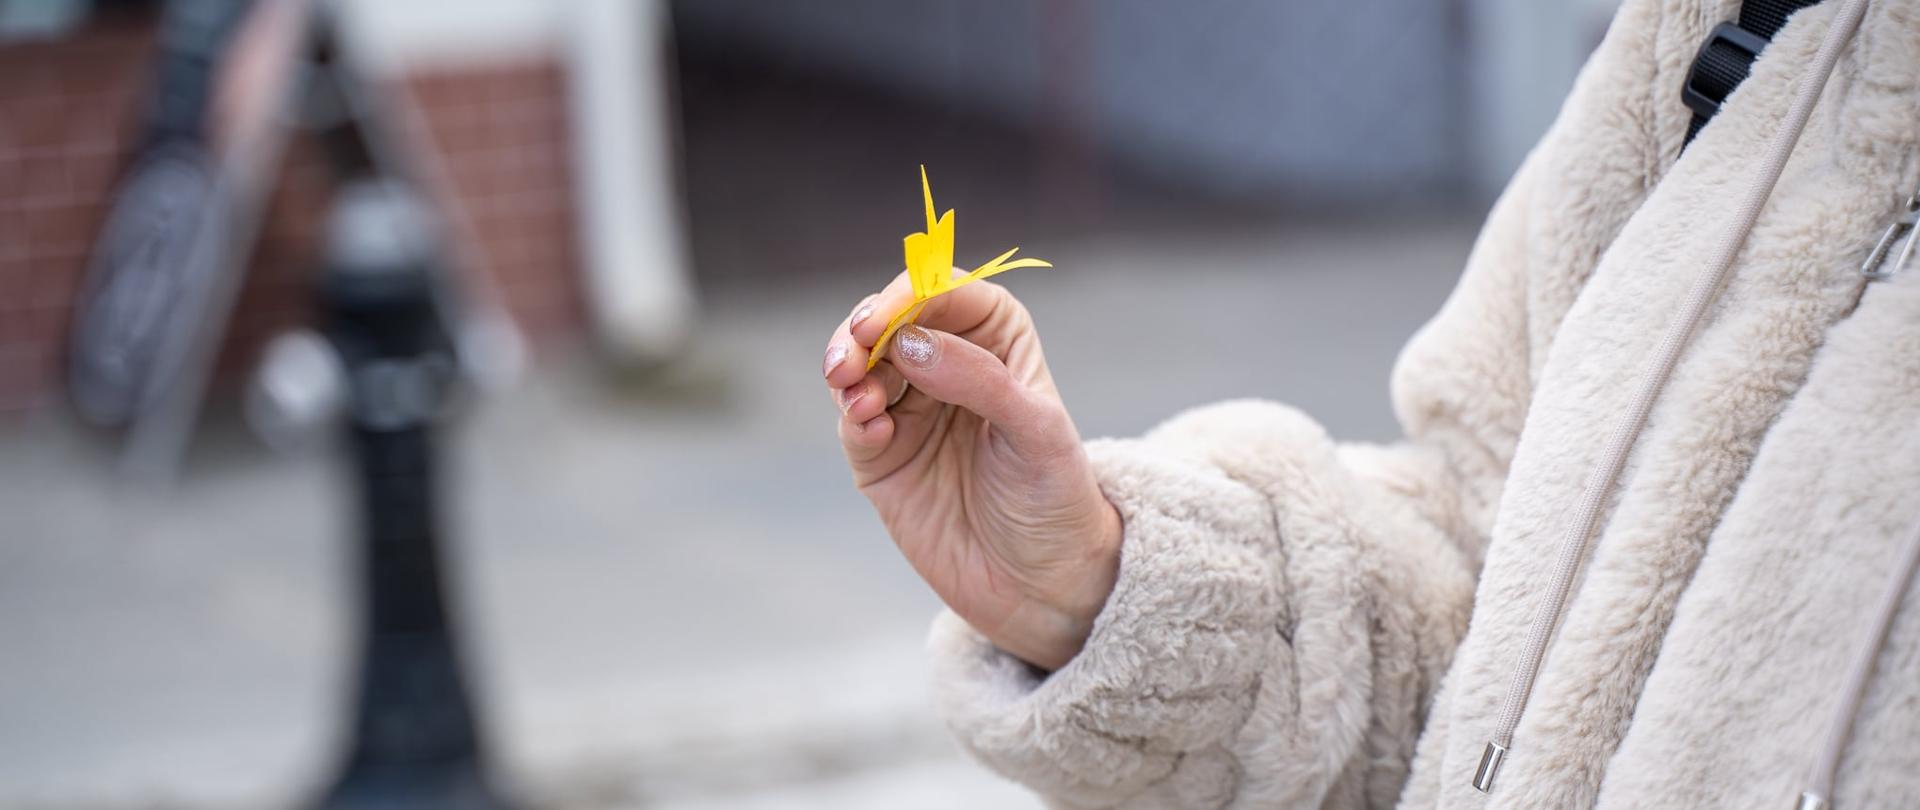 Zdjęcie przedstawia kobiecą dłoń, w której znajduje się papierowy żółty kwiatek - żonkil